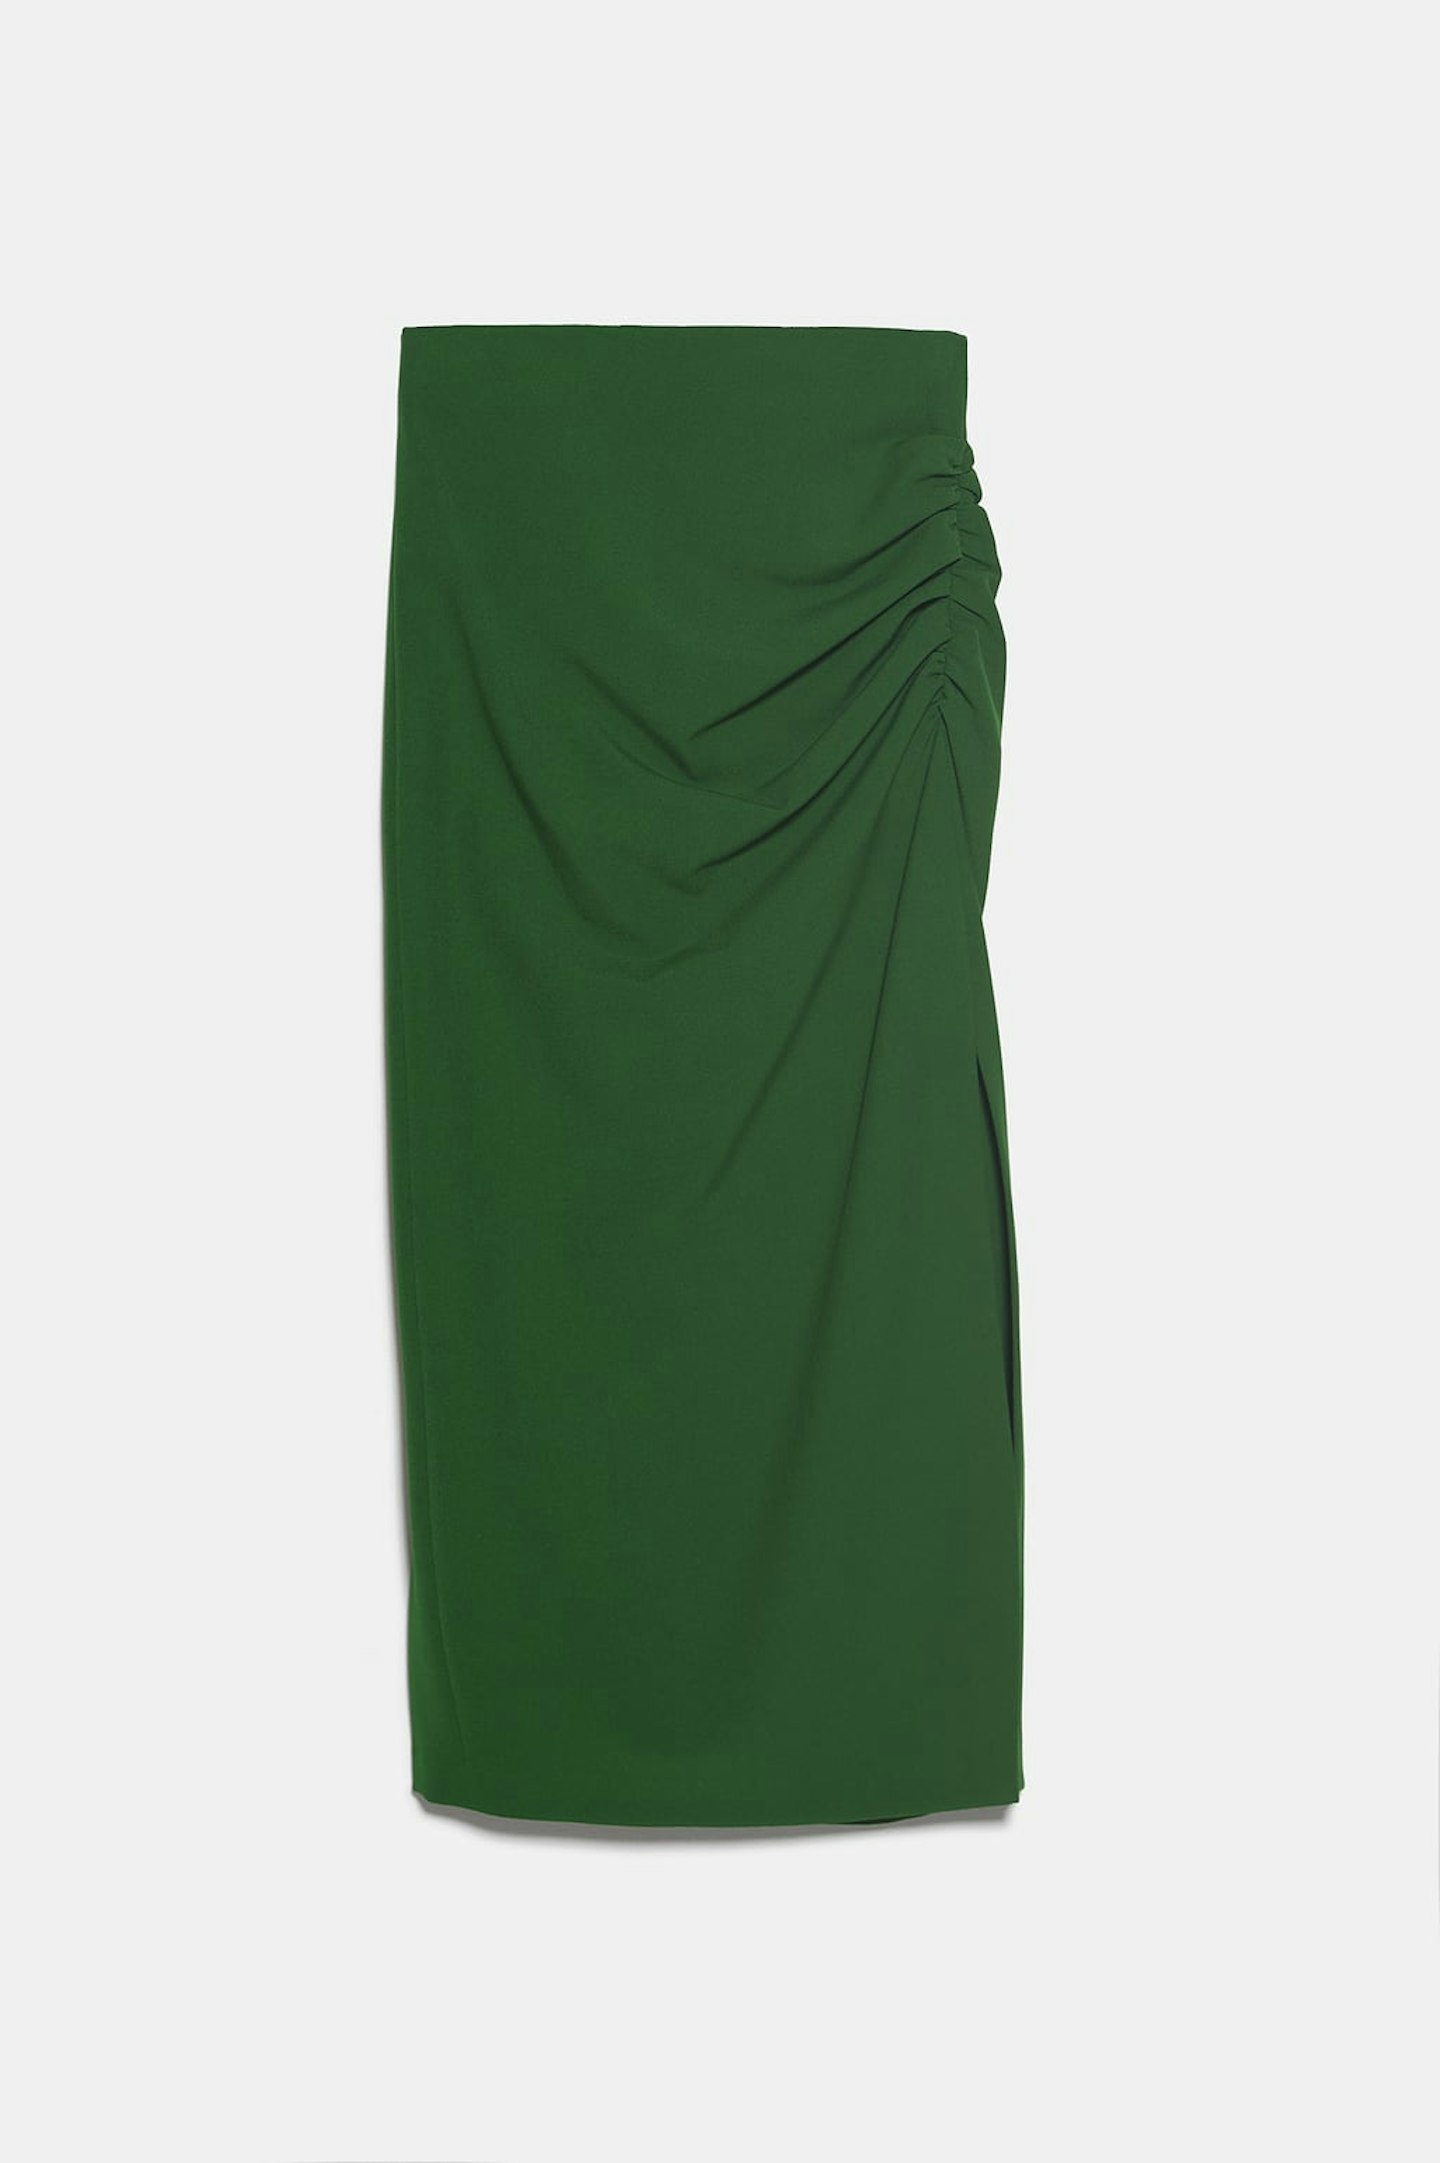 Zara, Green Pencil Skirt, £49.99